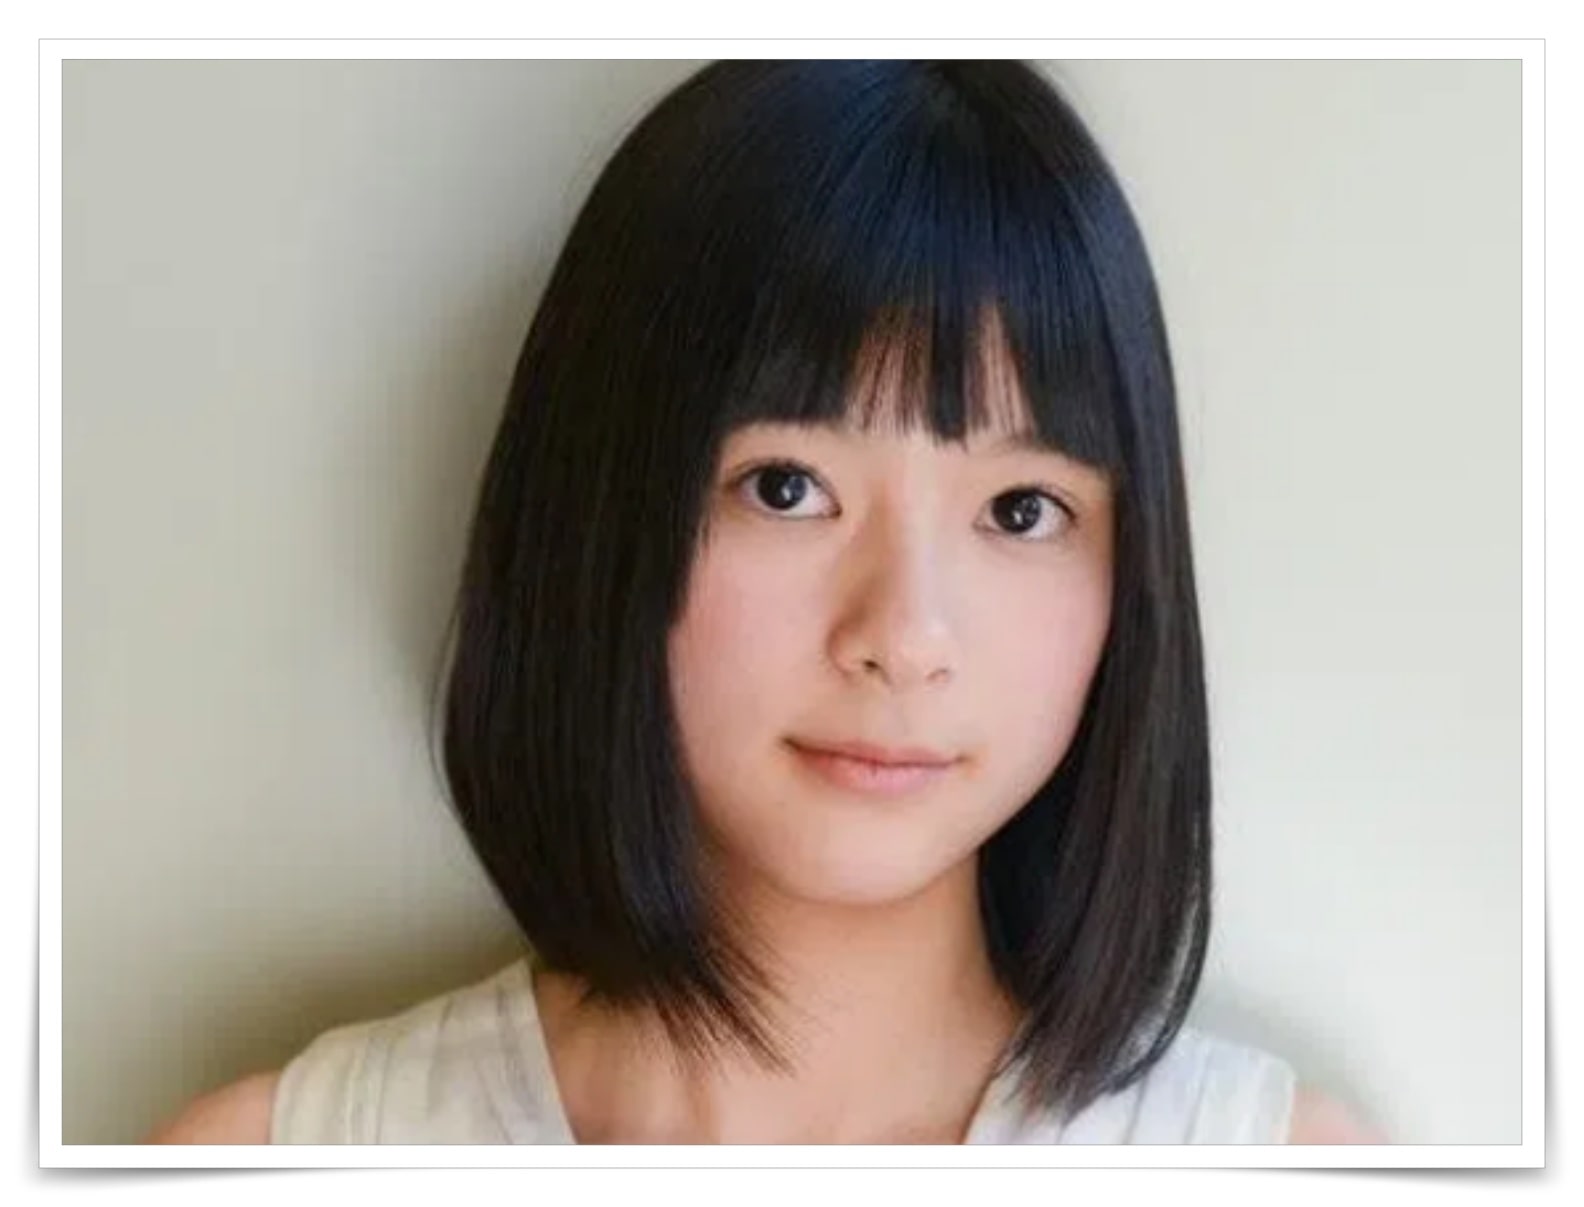 芳根京子の黒目が大きいのはカラコンか比較画像